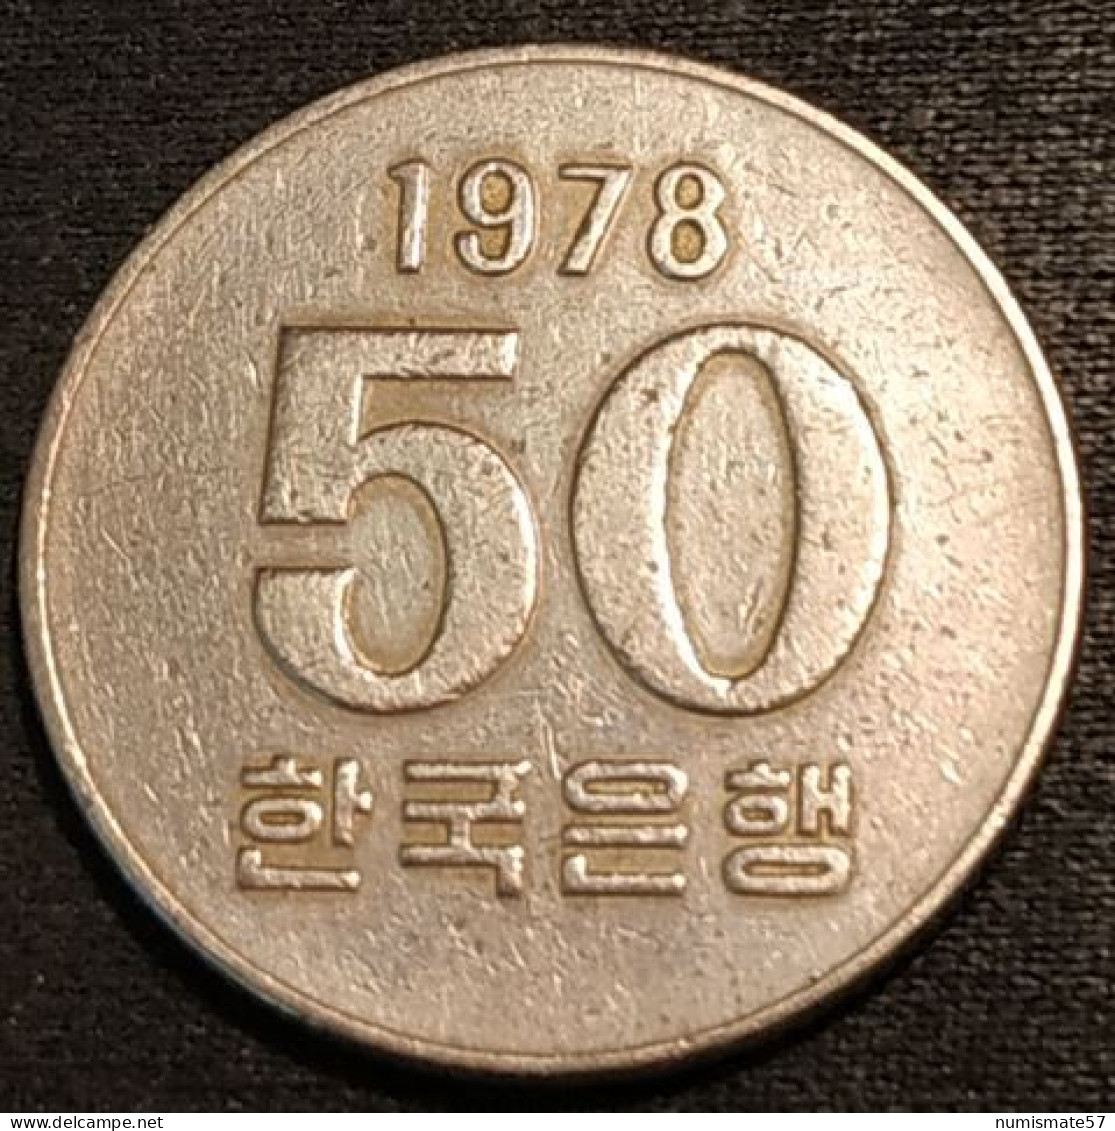 COREE DU SUD - SOUTH KOREA - 50 WON 1978 - KM 20 - Korea (Zuid)